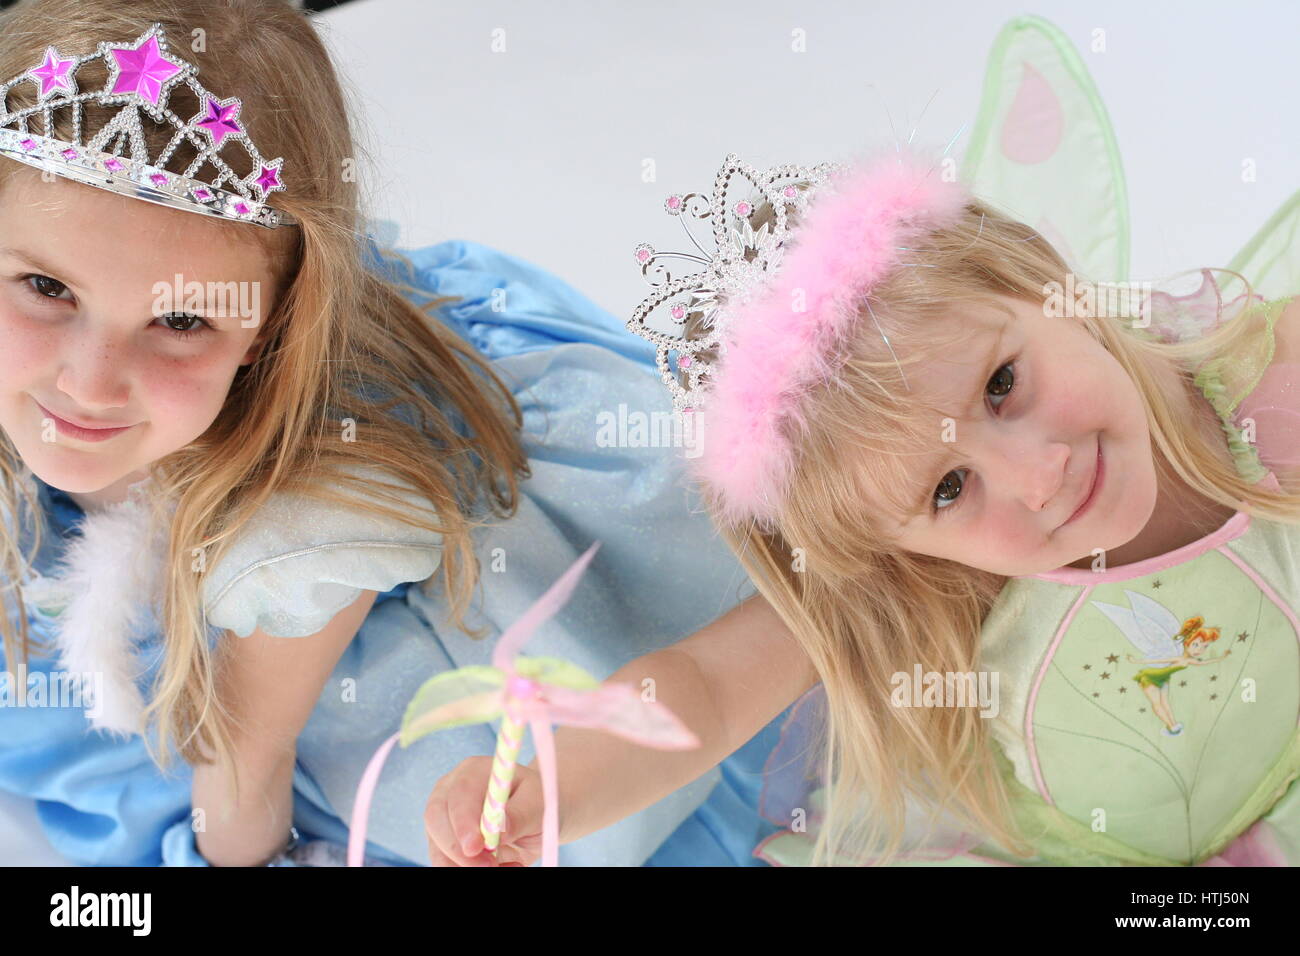 Disney Cinderella & Tinkerbell Kostüme. Kleine Mädchen Kinder gekleidet in  Prinzessin Kleider und Kronen, unschuldige Konzept, Kindheit Konzept  Stockfotografie - Alamy